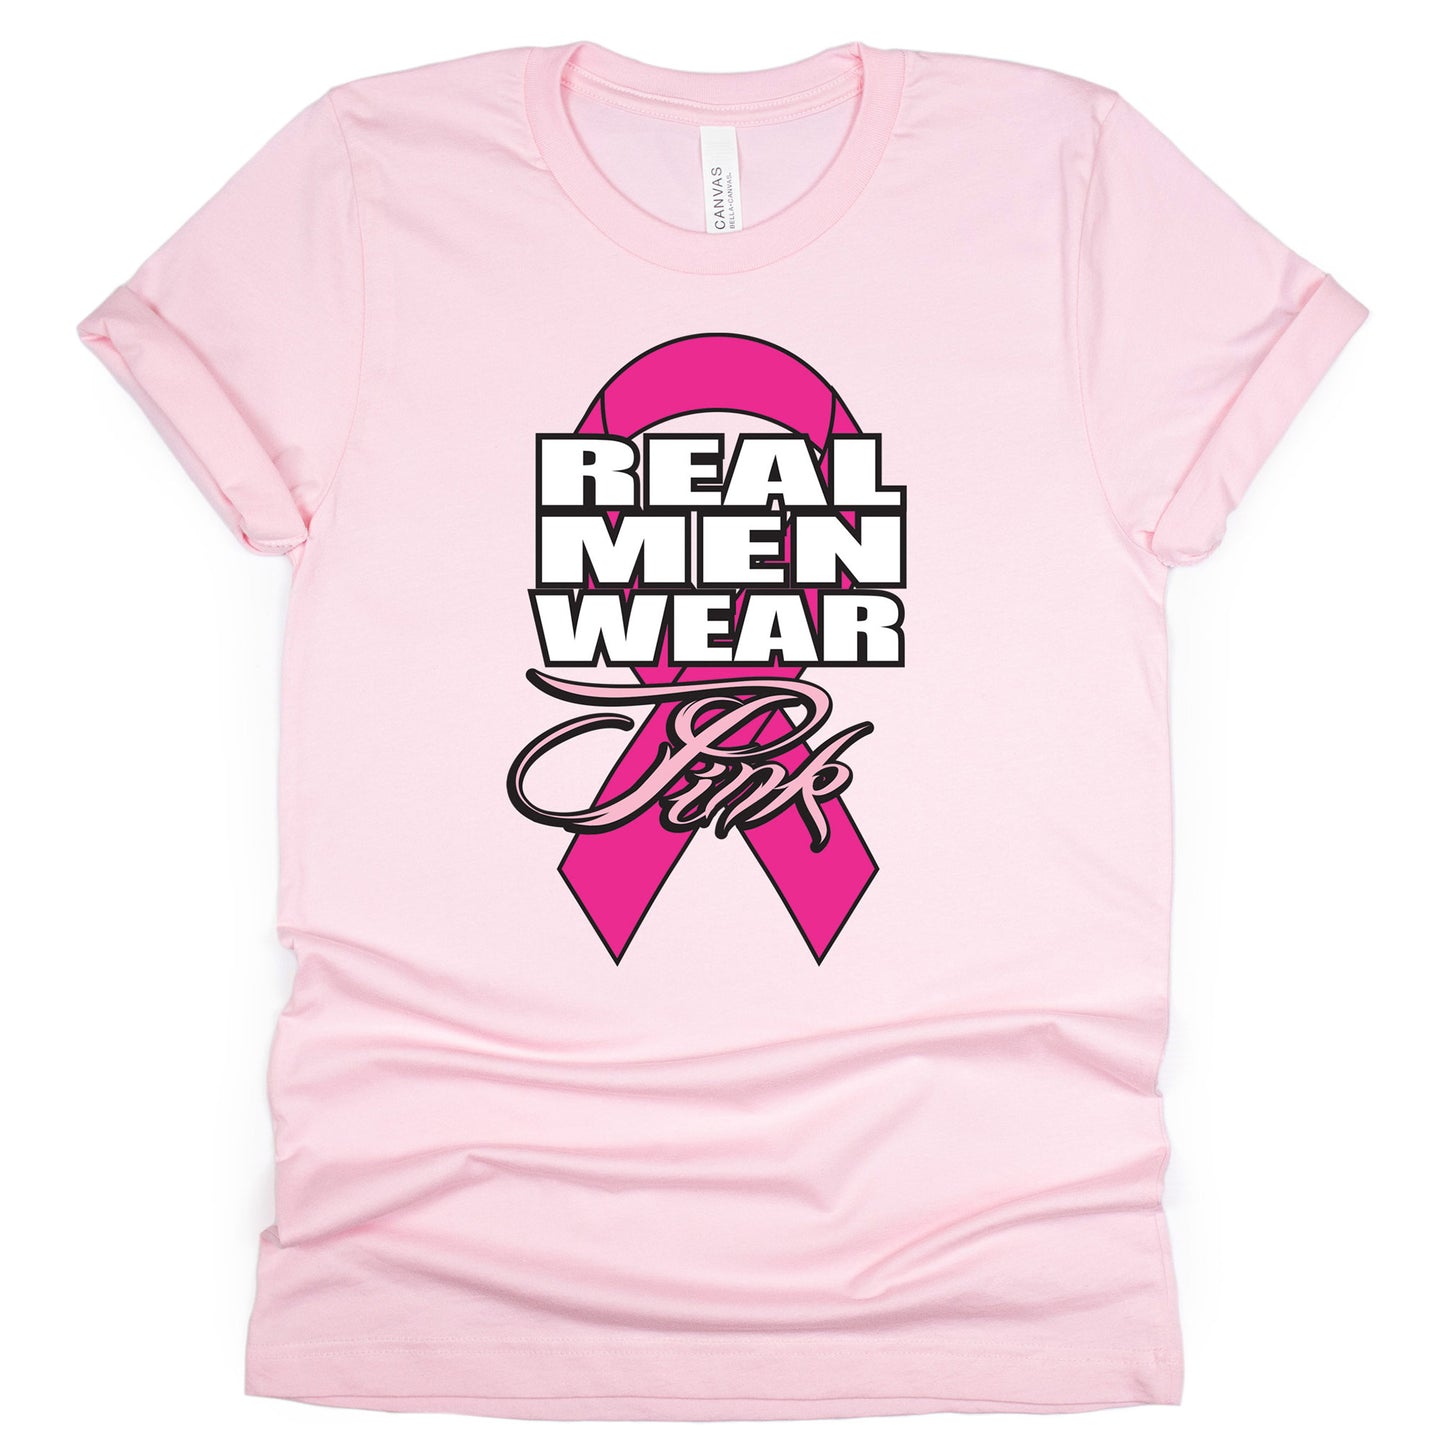 Real Men T-shirt, Cancer Awareness Tee